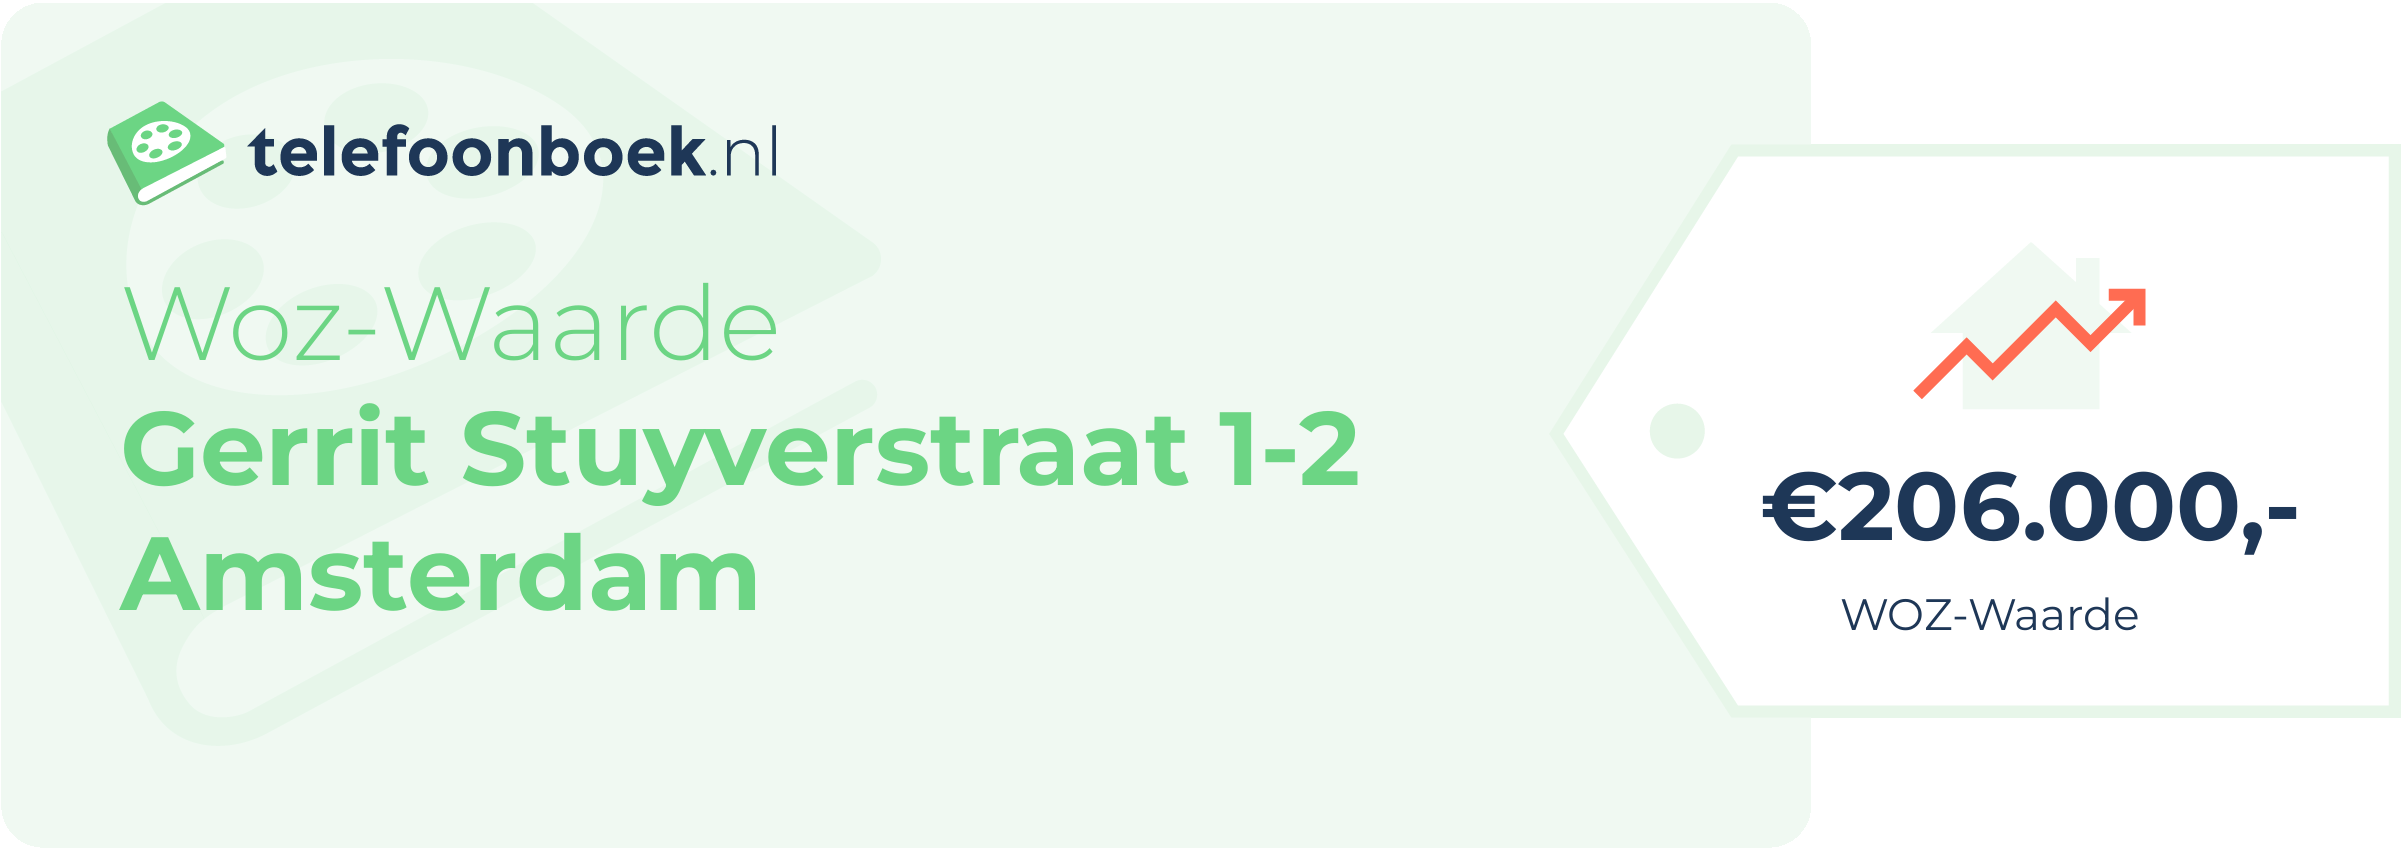 WOZ-waarde Gerrit Stuyverstraat 1-2 Amsterdam